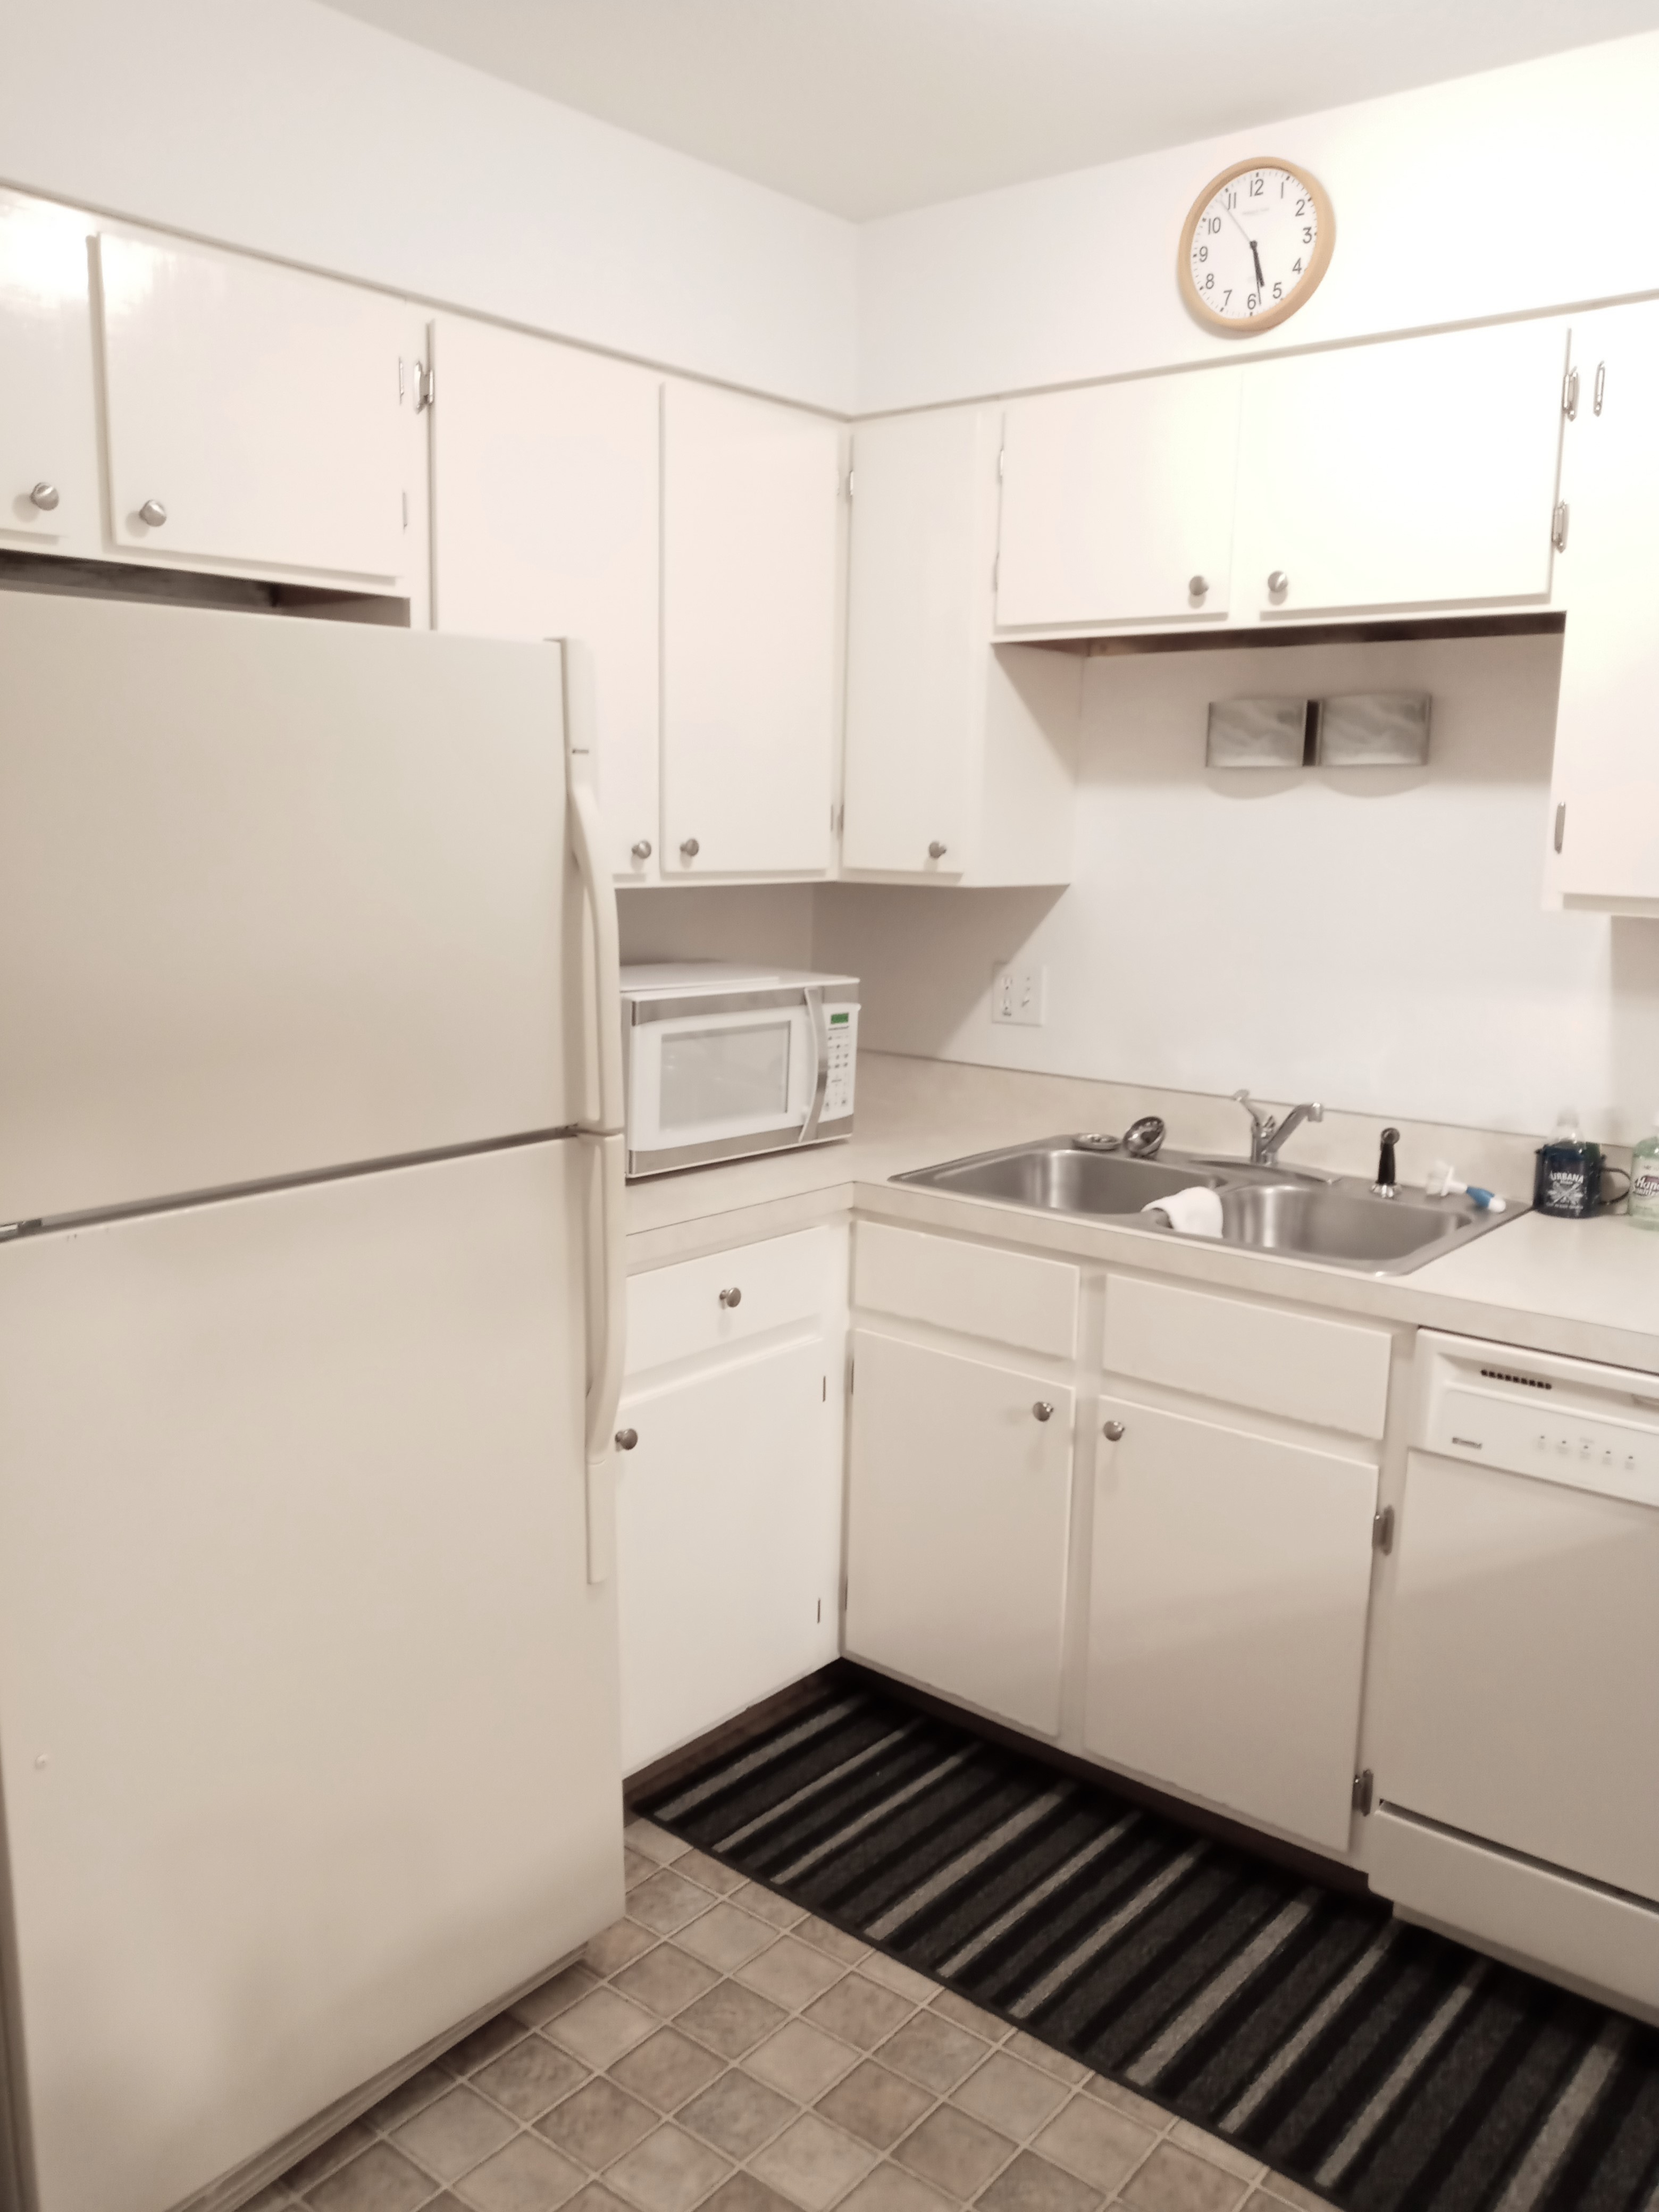 Sleek white kitchen with contemporary appliances